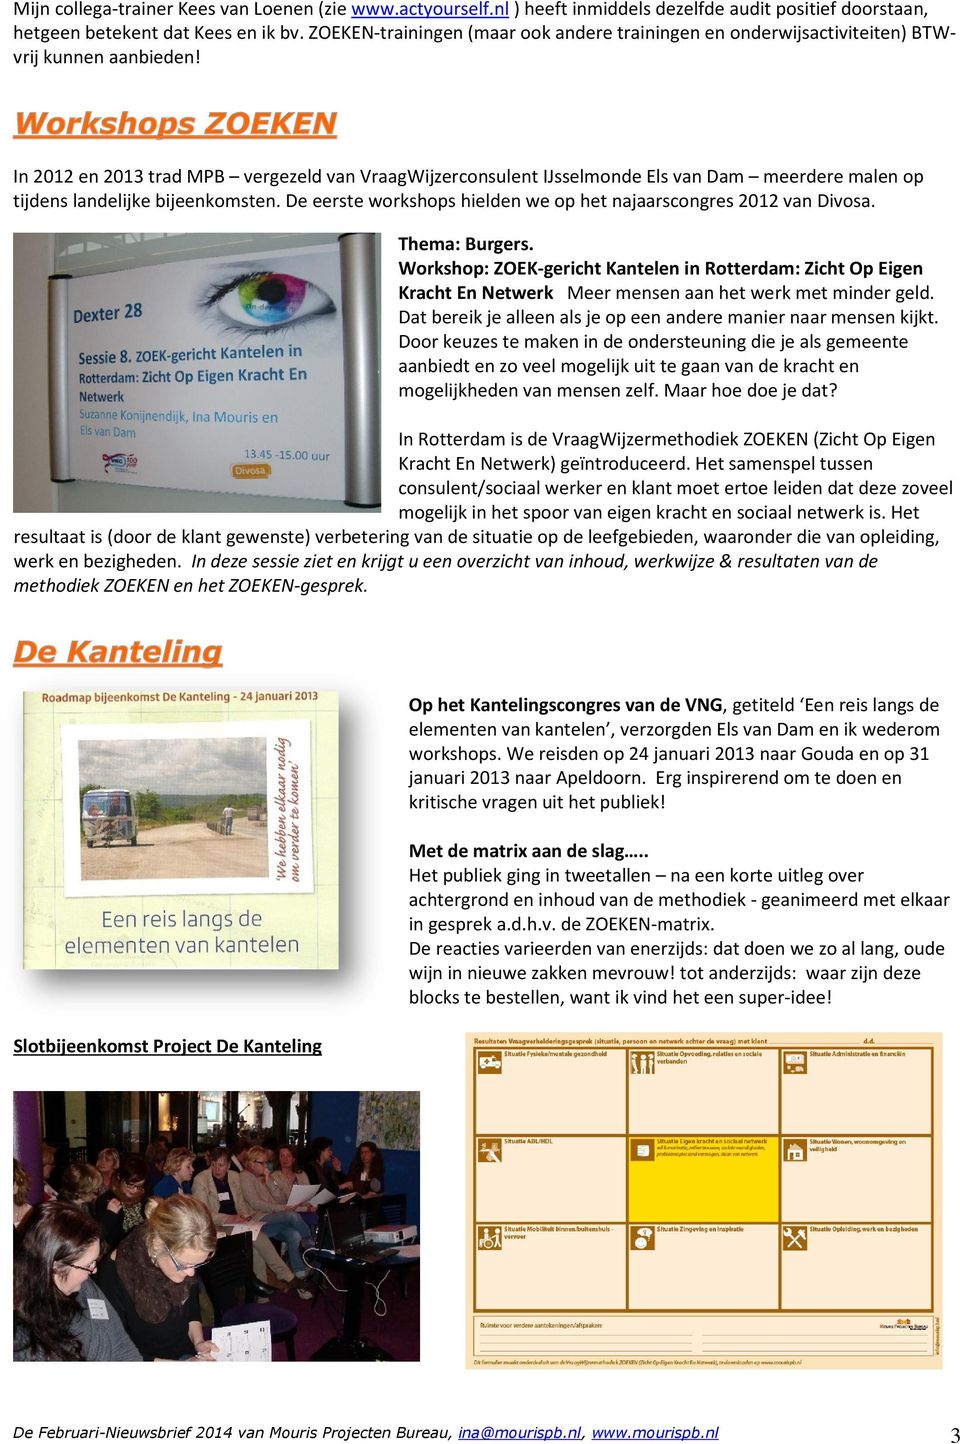 In 2012 en 2013 trad MPB vergezeld van VraagWijzerconsulent IJsselmonde Els van Dam meerdere malen op tijdens landelijke bijeenkomsten.